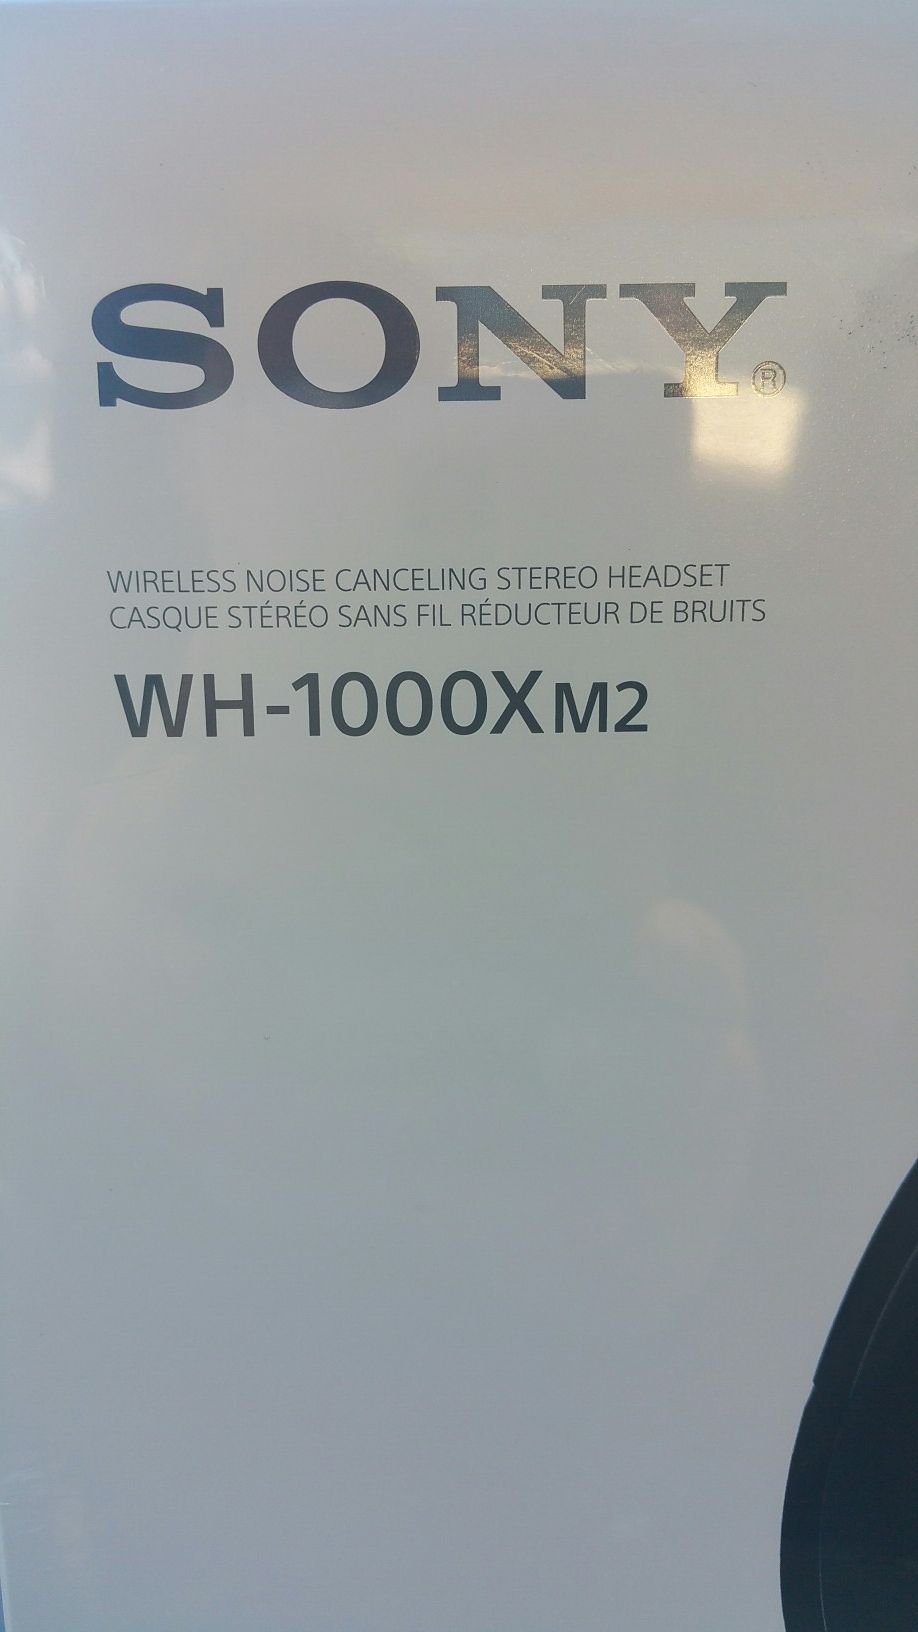 Sony wh-1000mx2 headphones brand new in box.